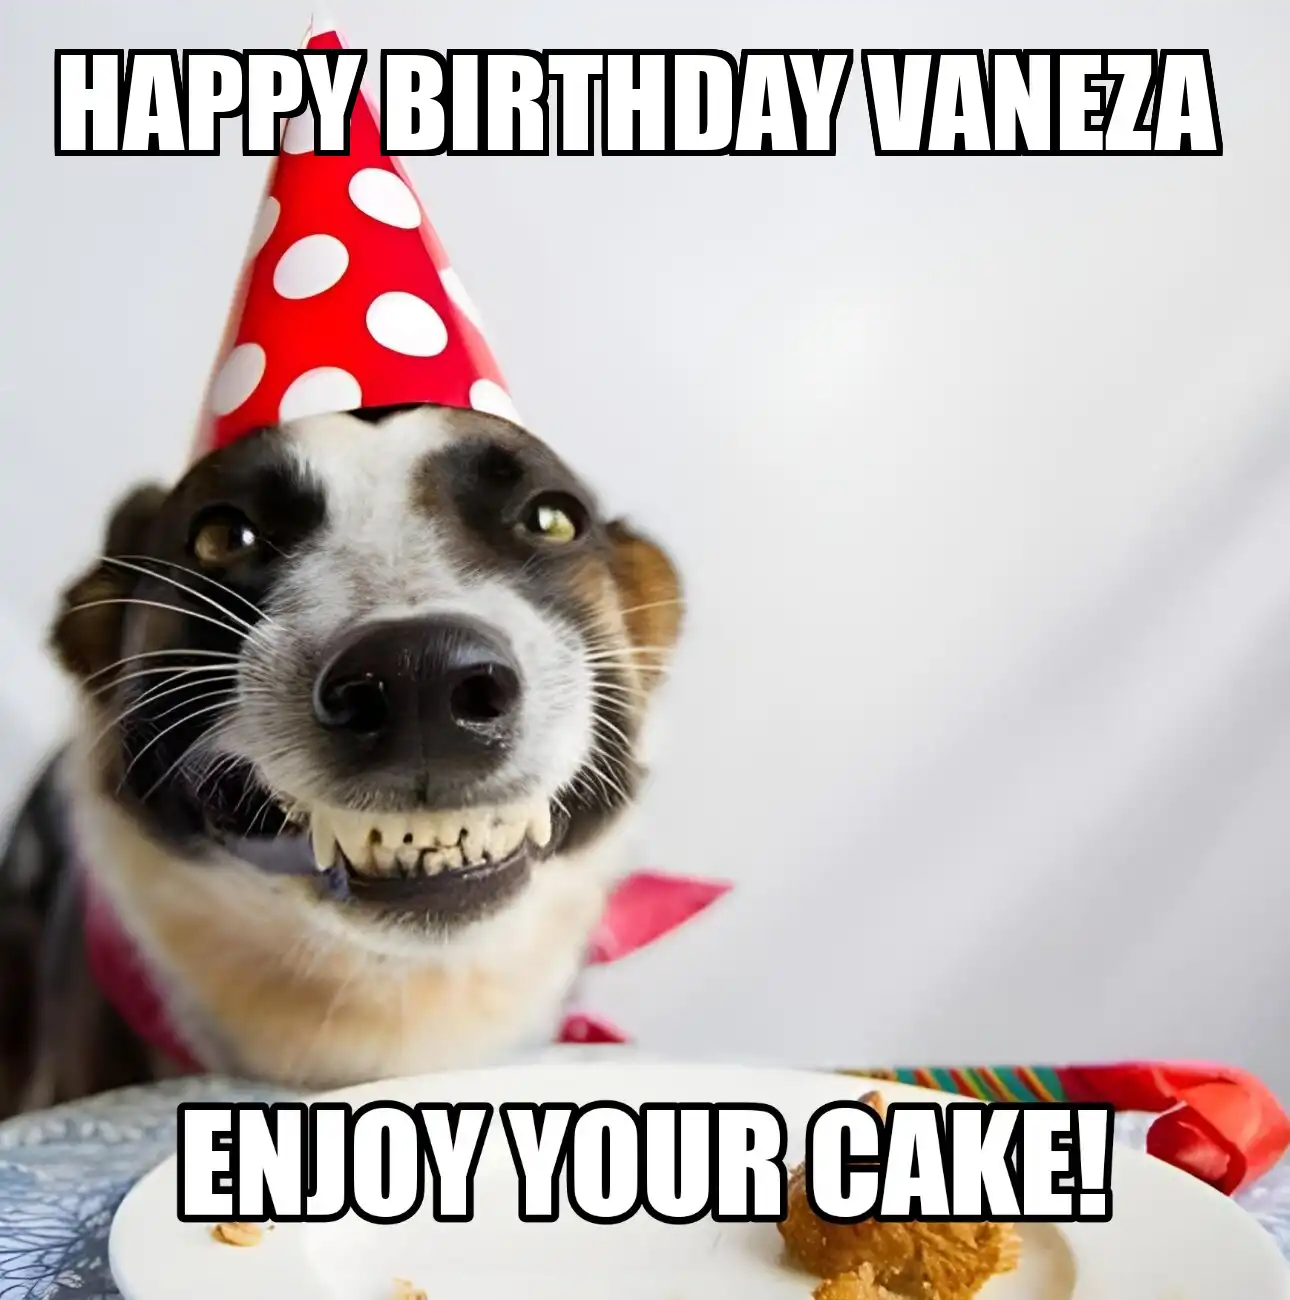 Happy Birthday Vaneza Enjoy Your Cake Dog Meme